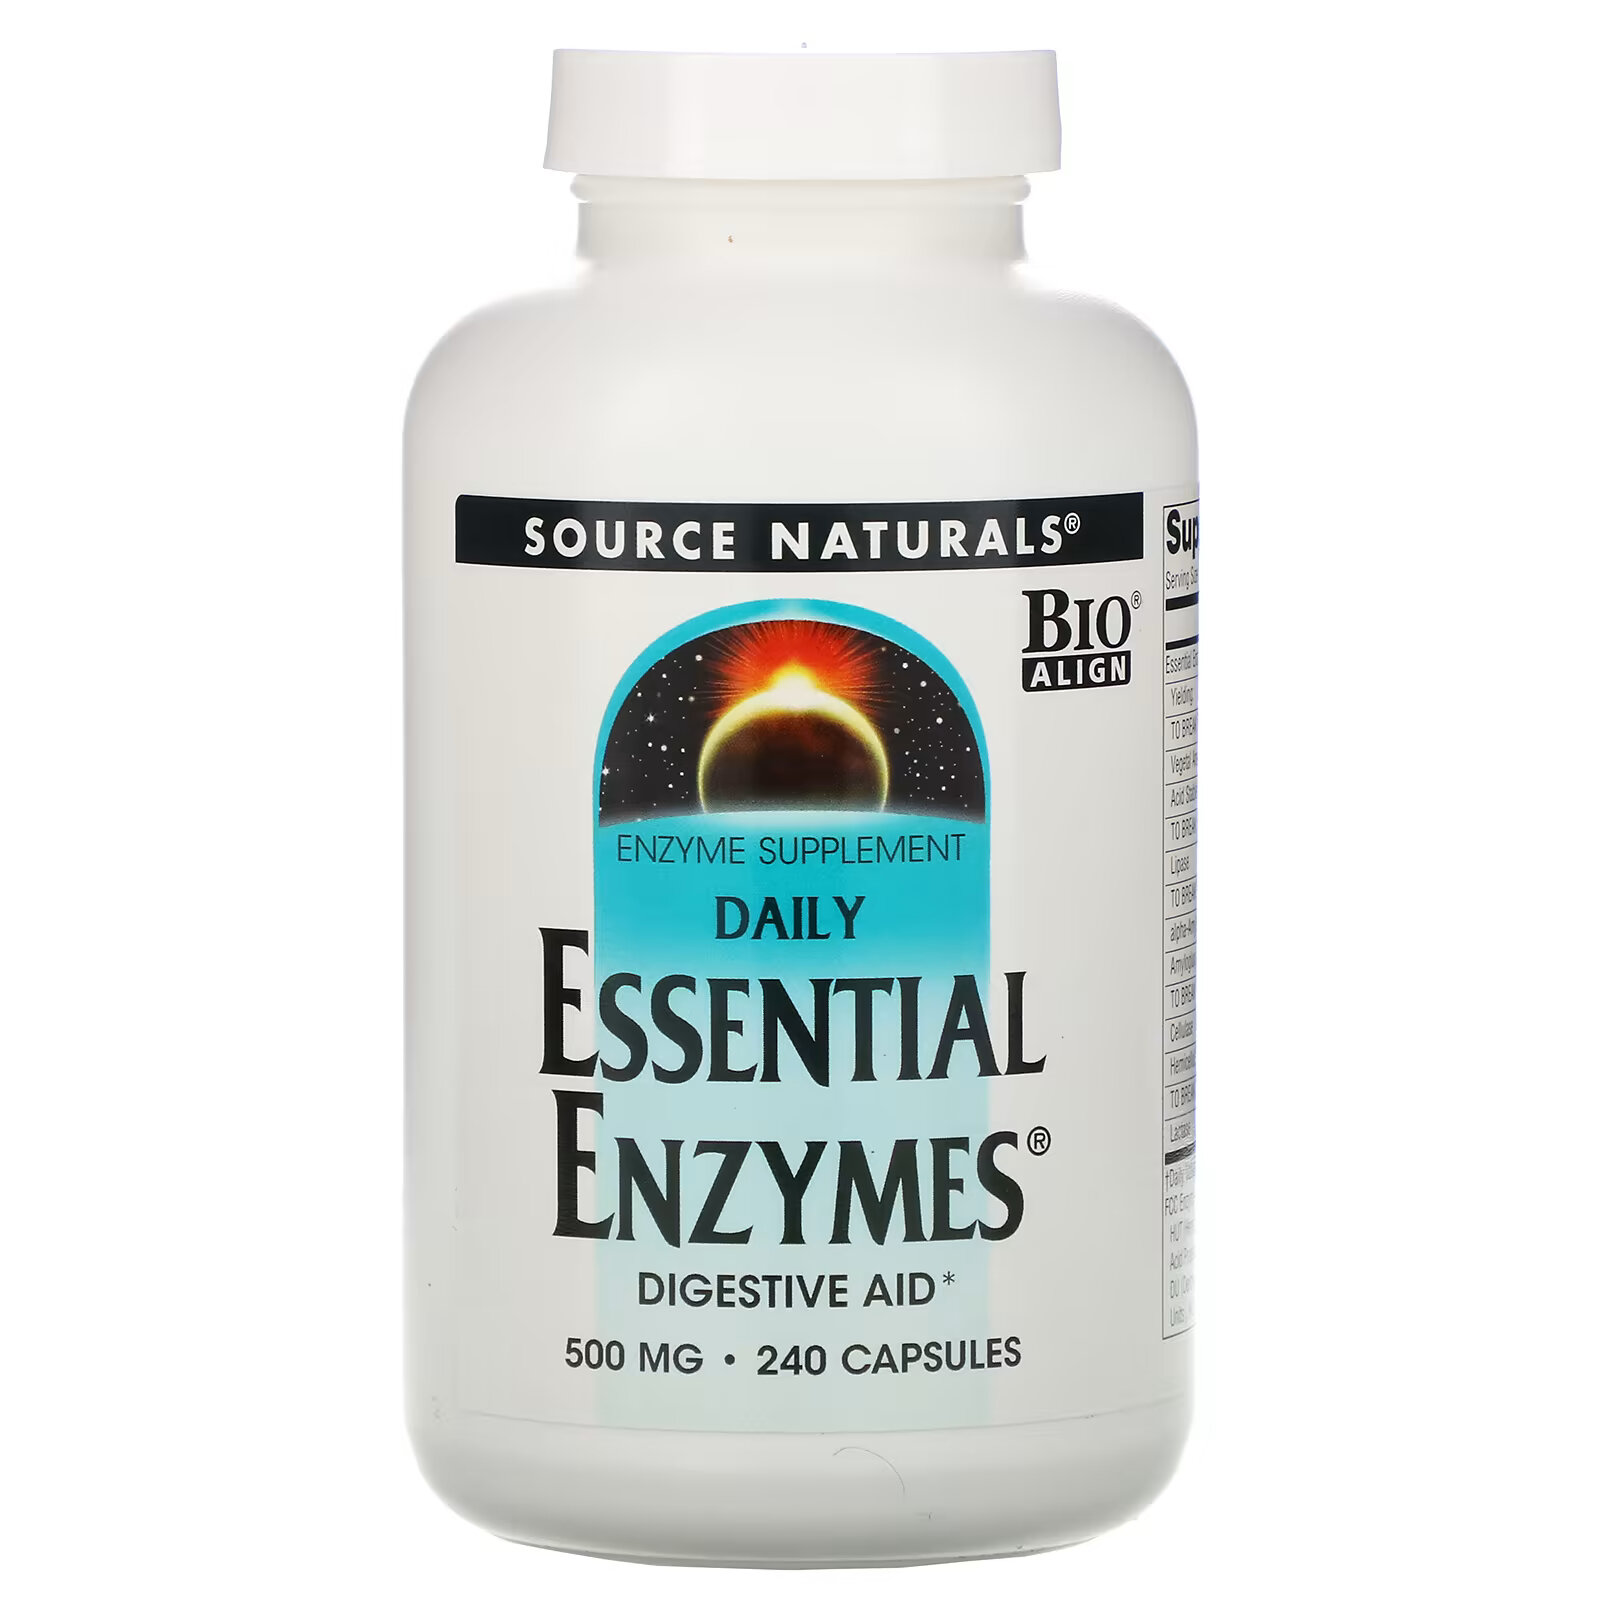 source naturals daily essential enzymes добавка с незаменимыми ферментами для ежедневного использования 500 мг 240 капсул Source Naturals, Daily Essential Enzymes, добавка с незаменимыми ферментами для ежедневного использования, 500 мг, 240 капсул